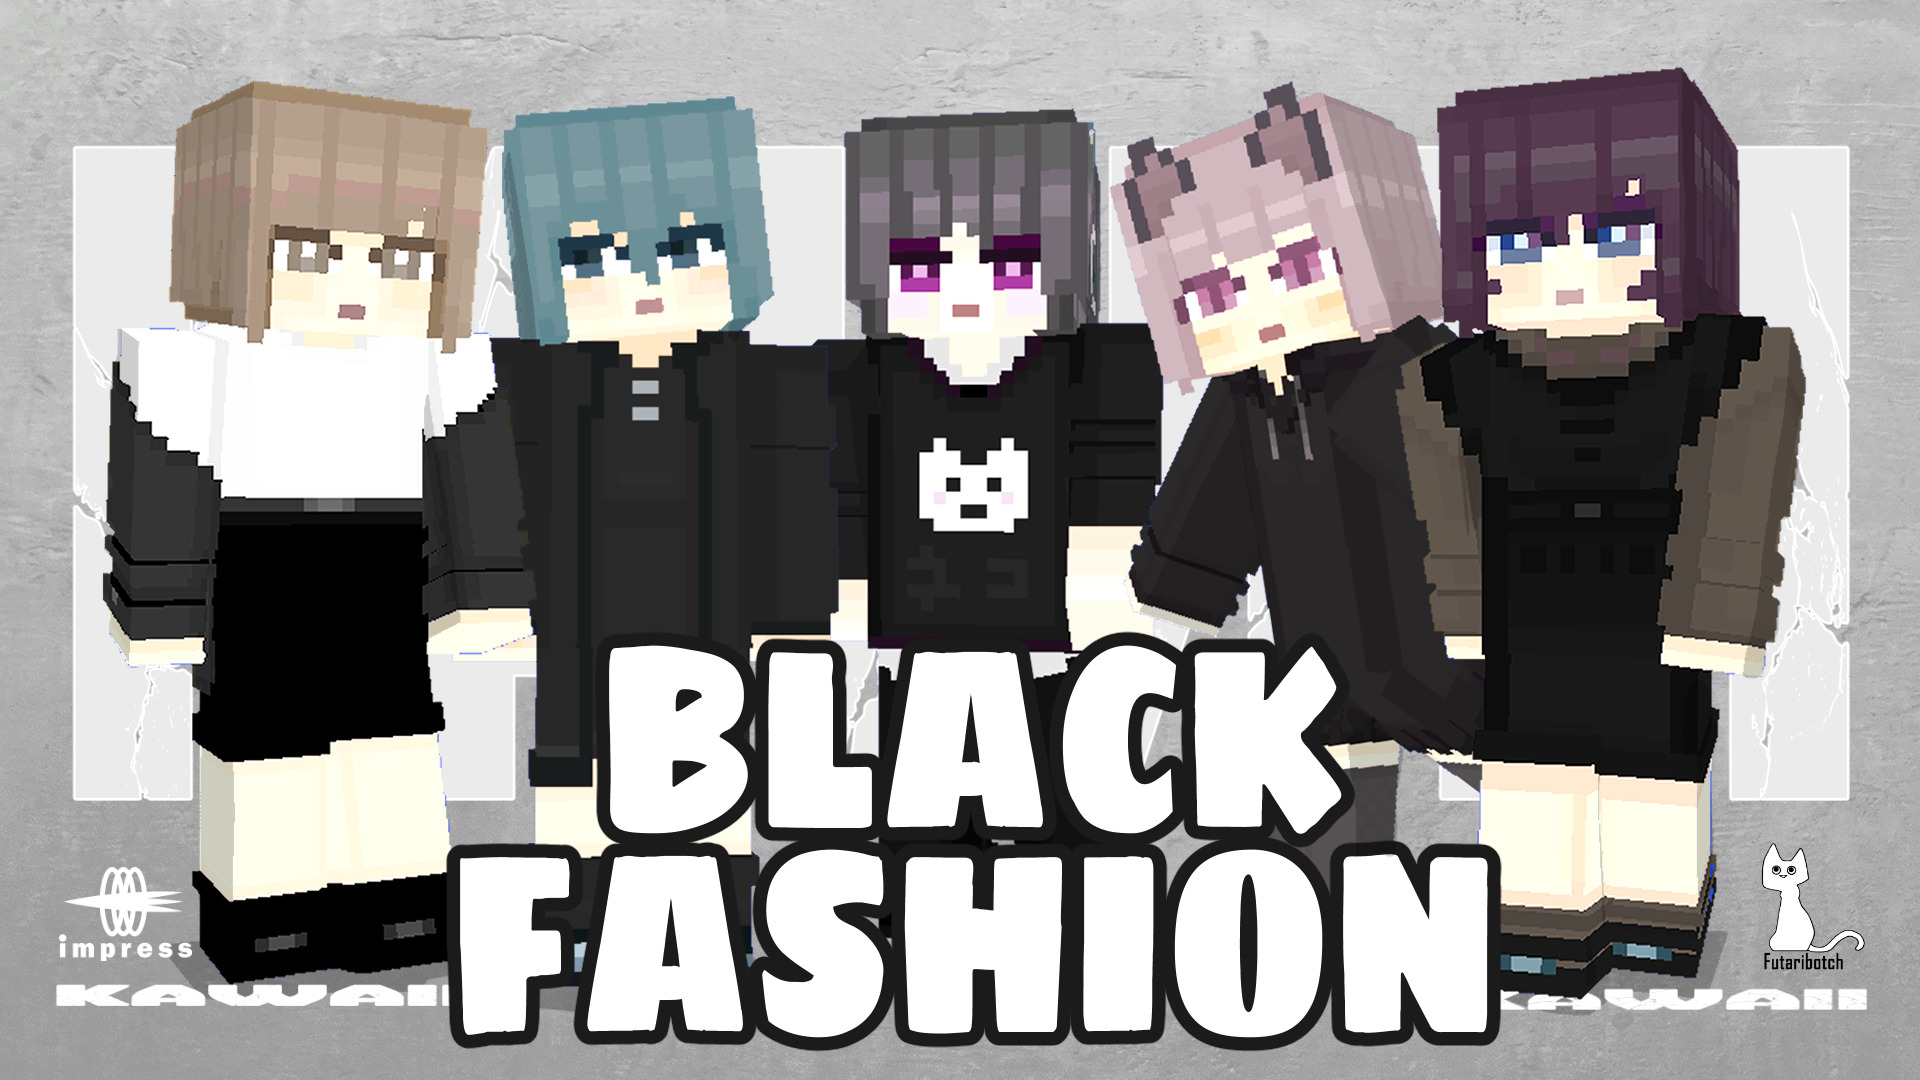 ふたりぼっち制作スキンパック Black Fashion Hd がリリースされました Japan Crafters Union